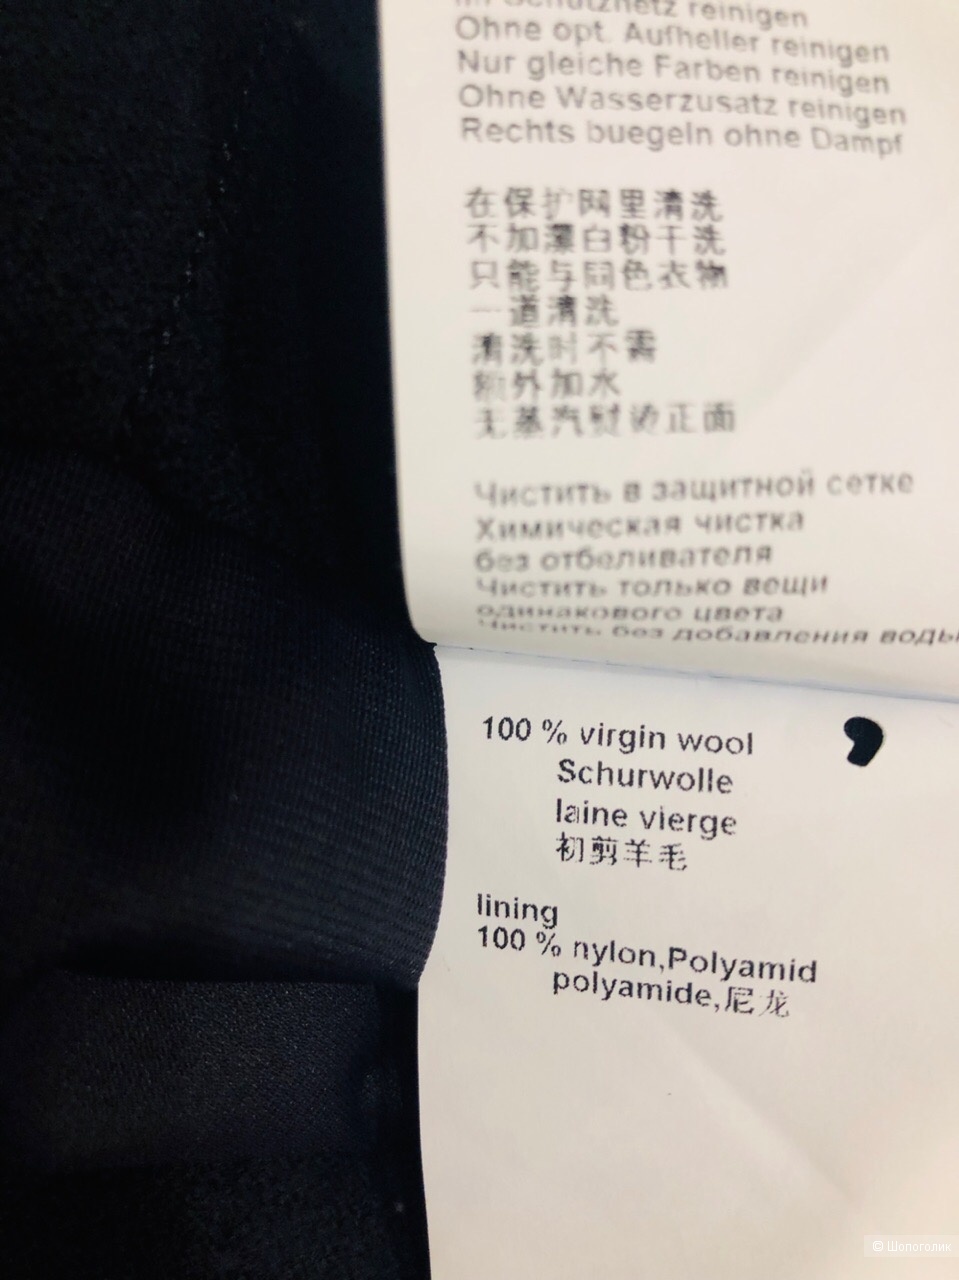 Юбочка  "Marccain" из 100% virgin wool Размер 3.